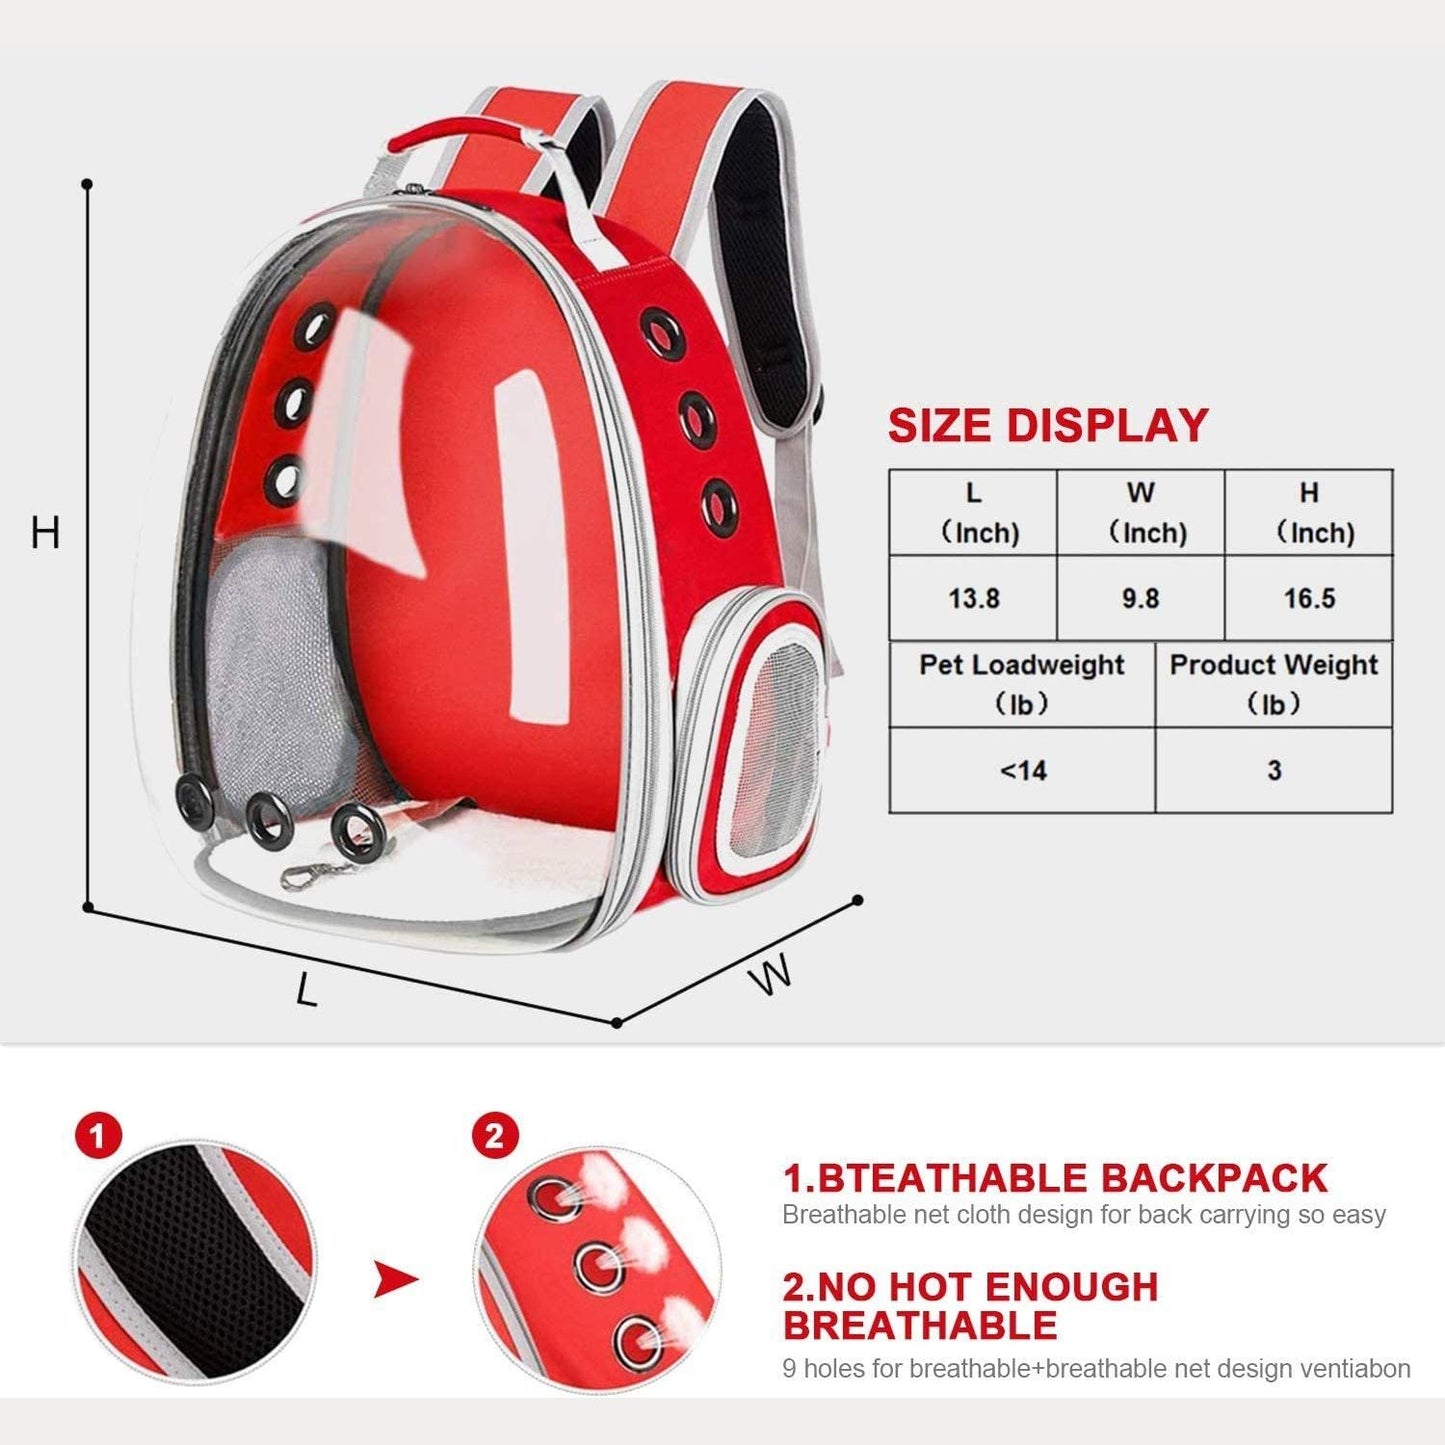 Floofi Space Capsule Backpack - Model 1 (Red) FI-BP-107-FCQ